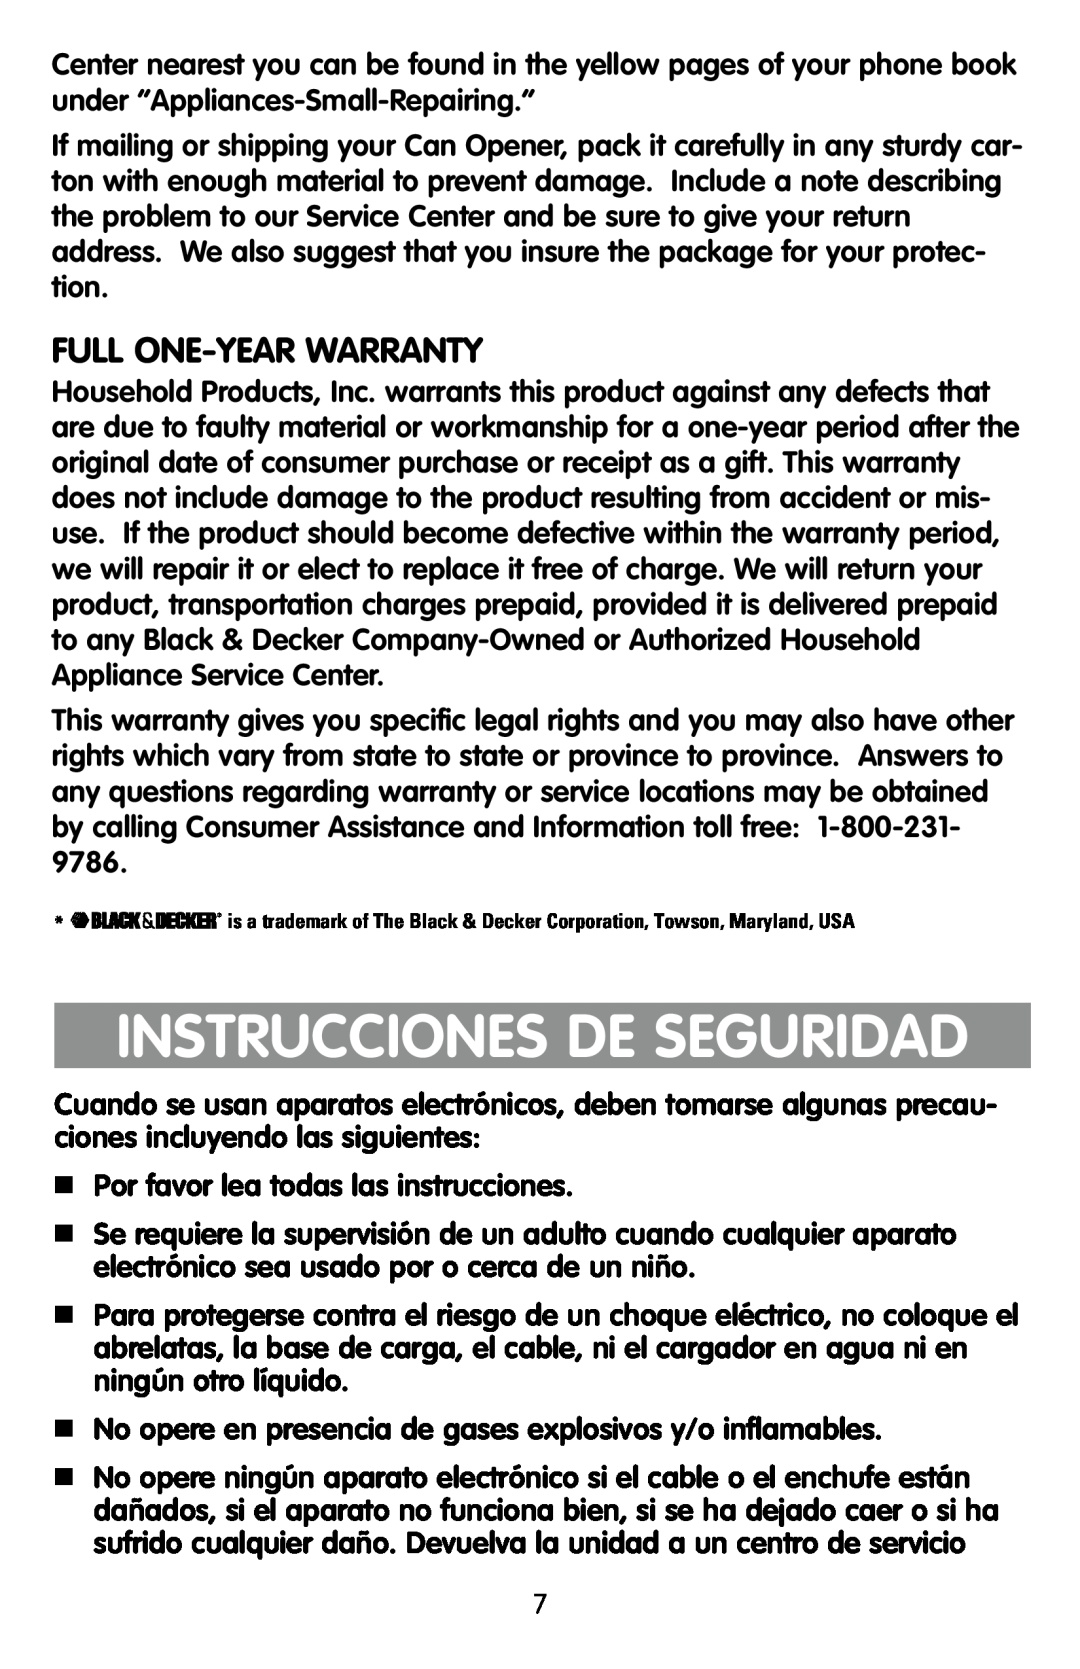 Black & Decker KEC500 manual Instrucciones De Seguridad, Full One-Year Warranty 